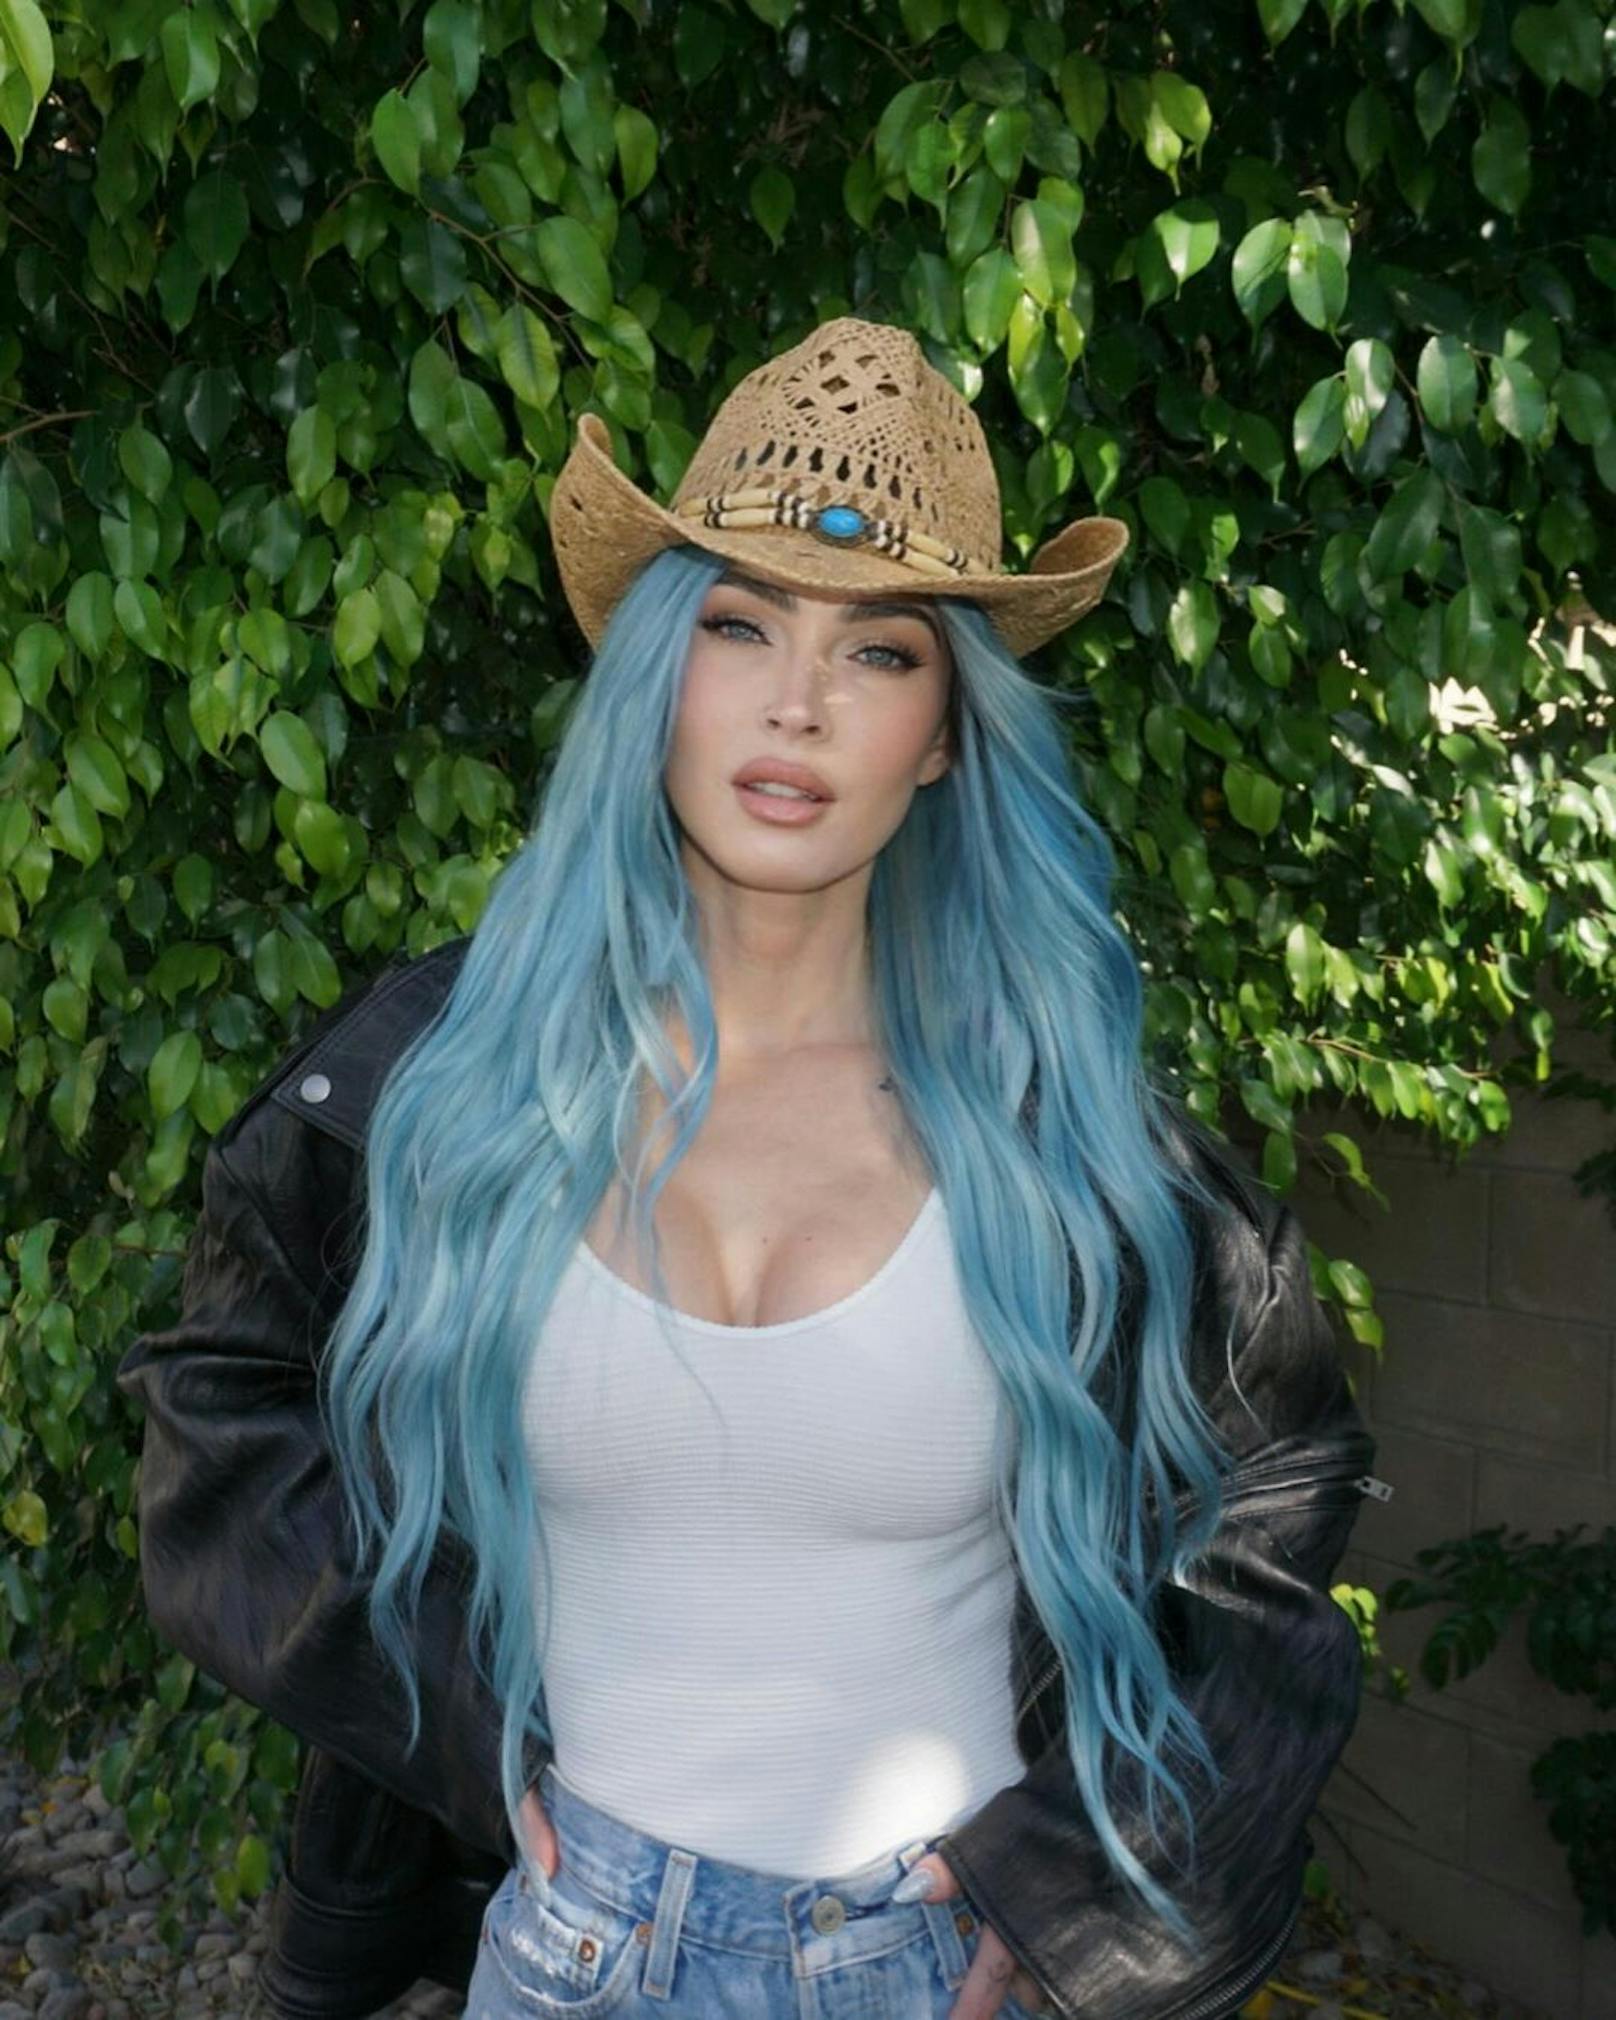 Für den ersten Tag des Coachella Festivals in L.A. zeigte sich Megan Fox mit langen blauen Locken.